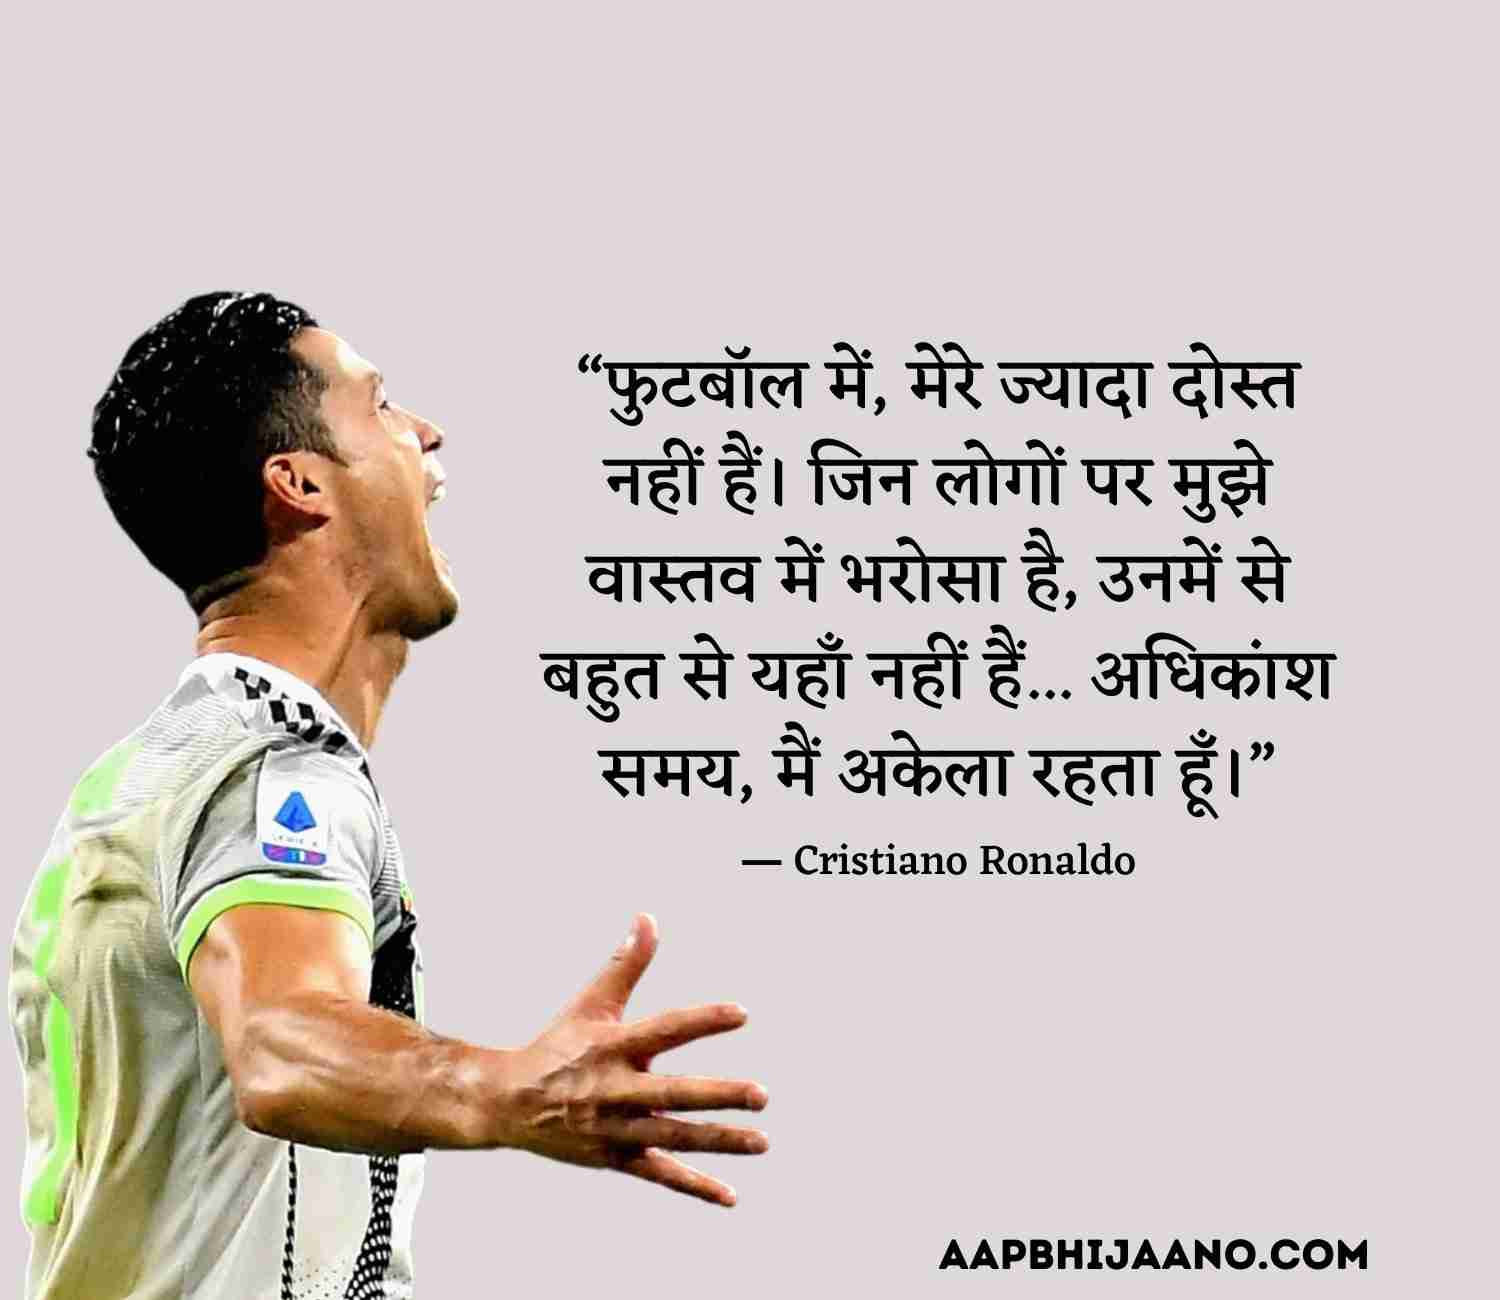 Cristiano Ronaldo Quotes in Hindi